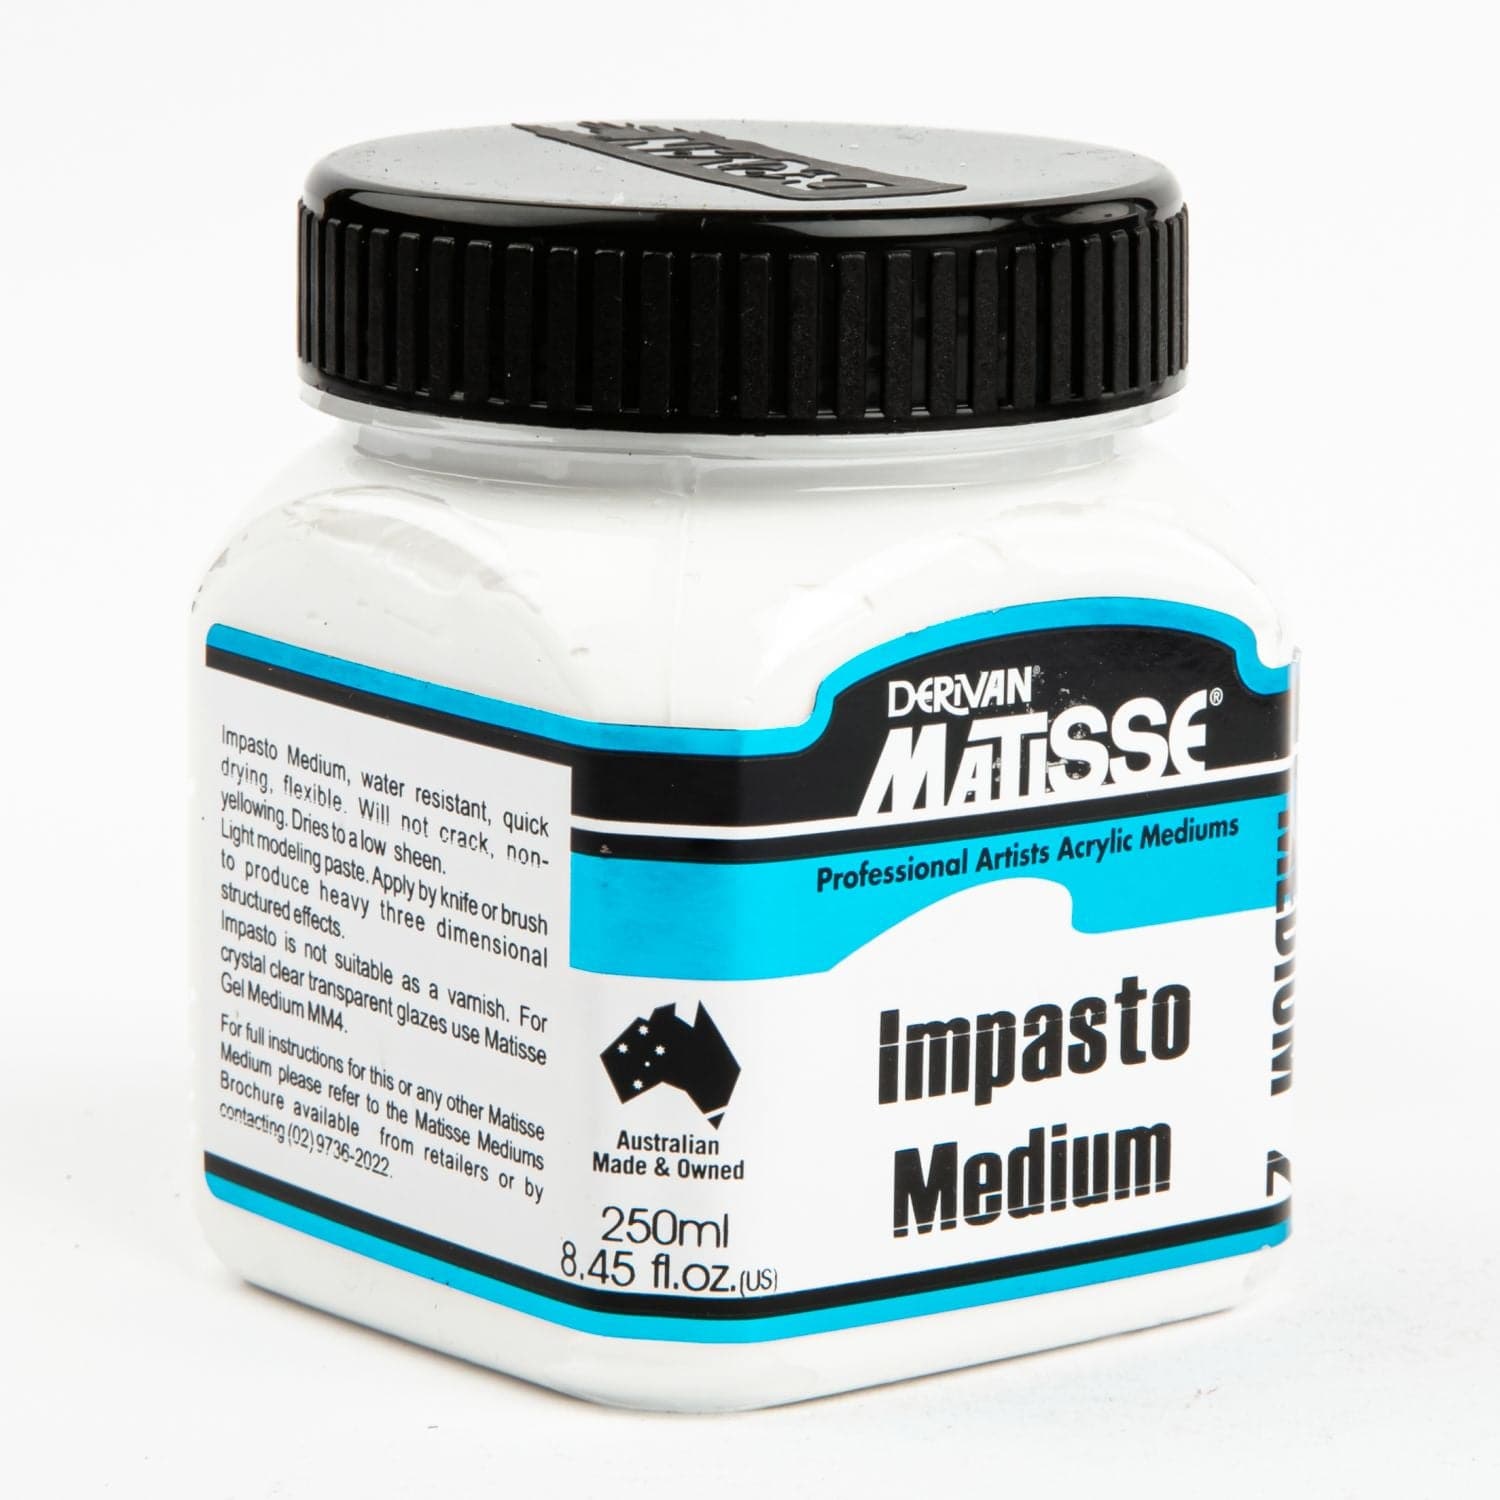 Image of Matisse Impasto Medium 250mL